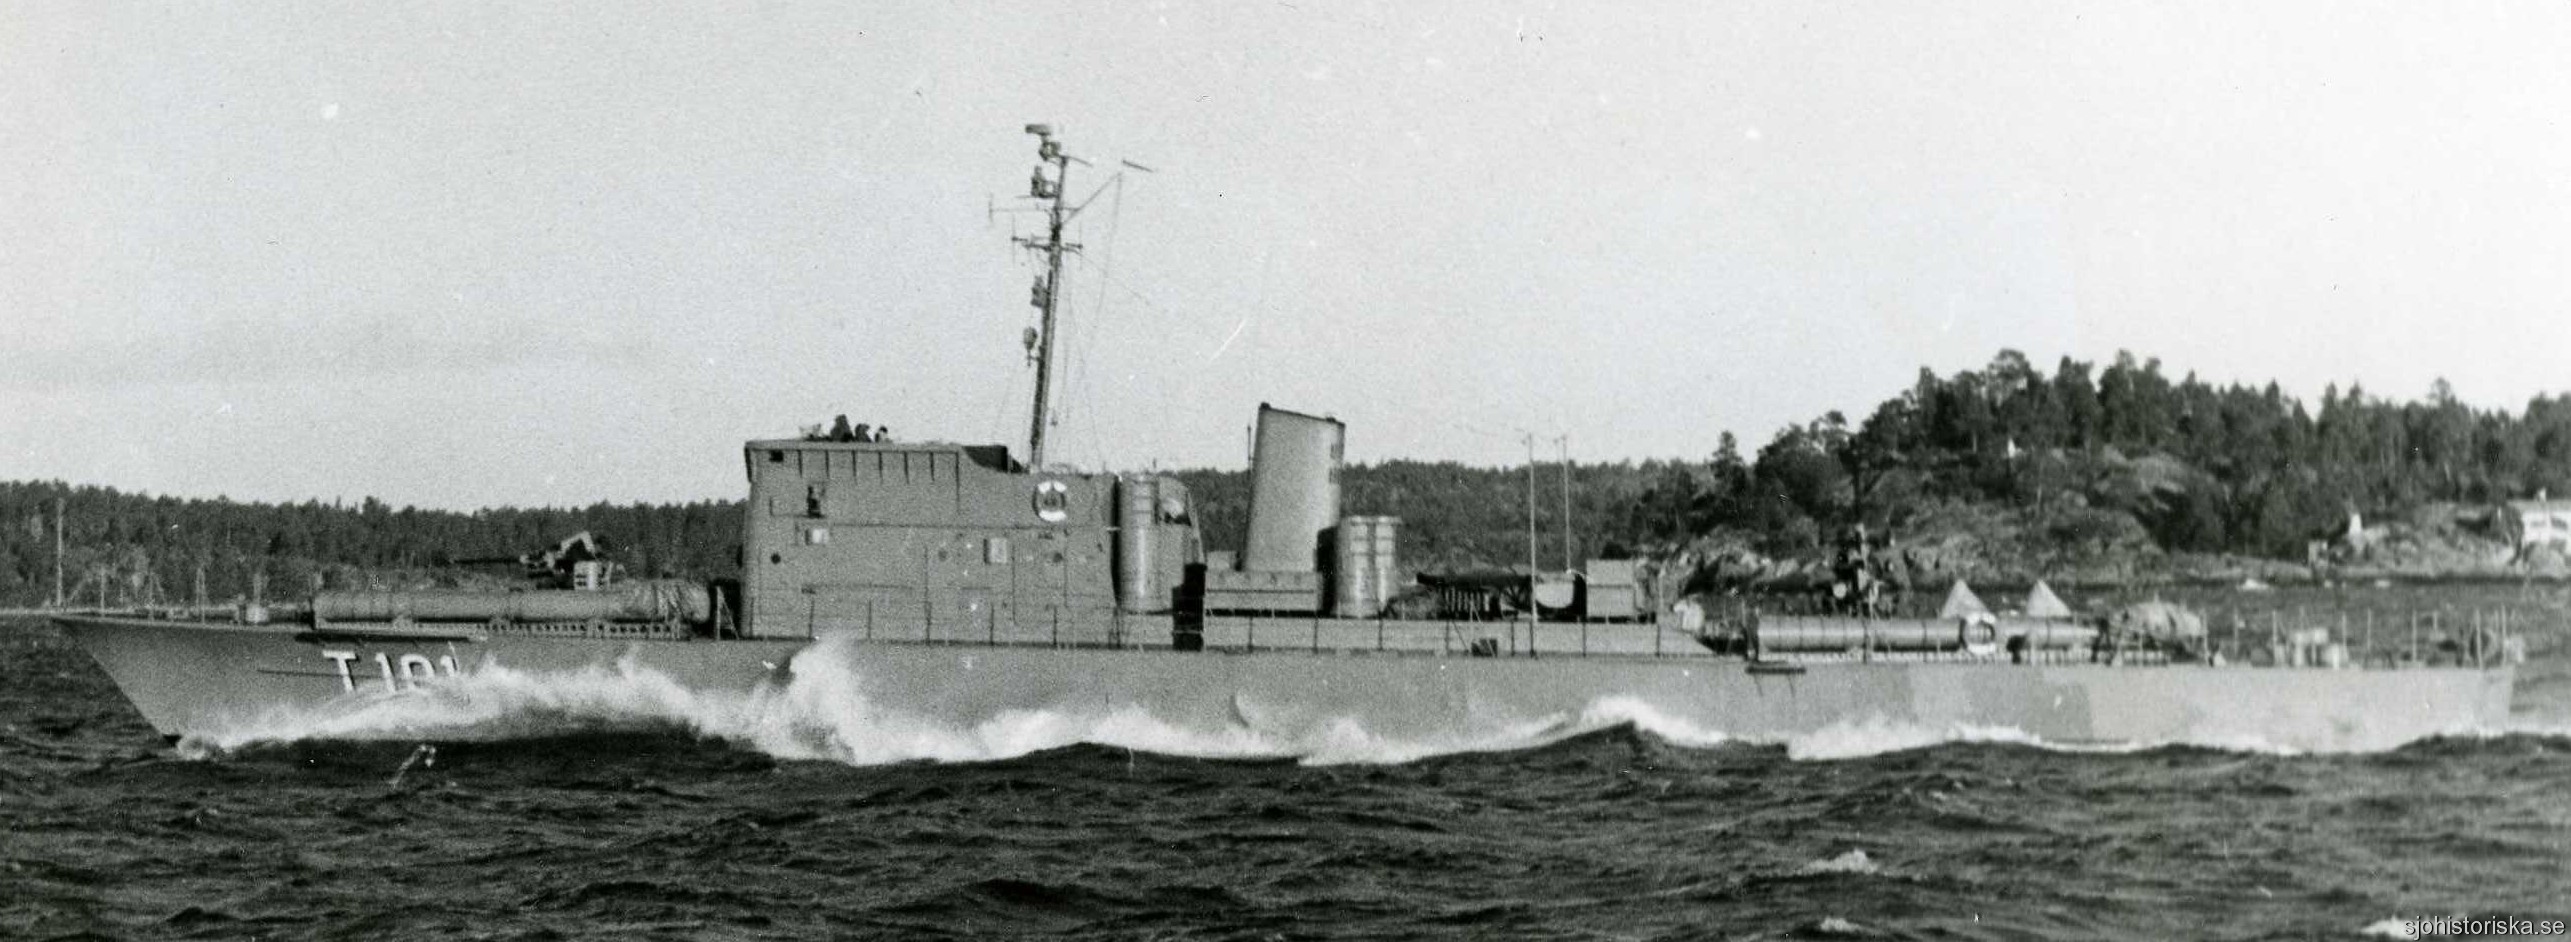 t101 perseus hms hswms fast attack craft torpedo boat vessel swedish navy svenska marinen 07